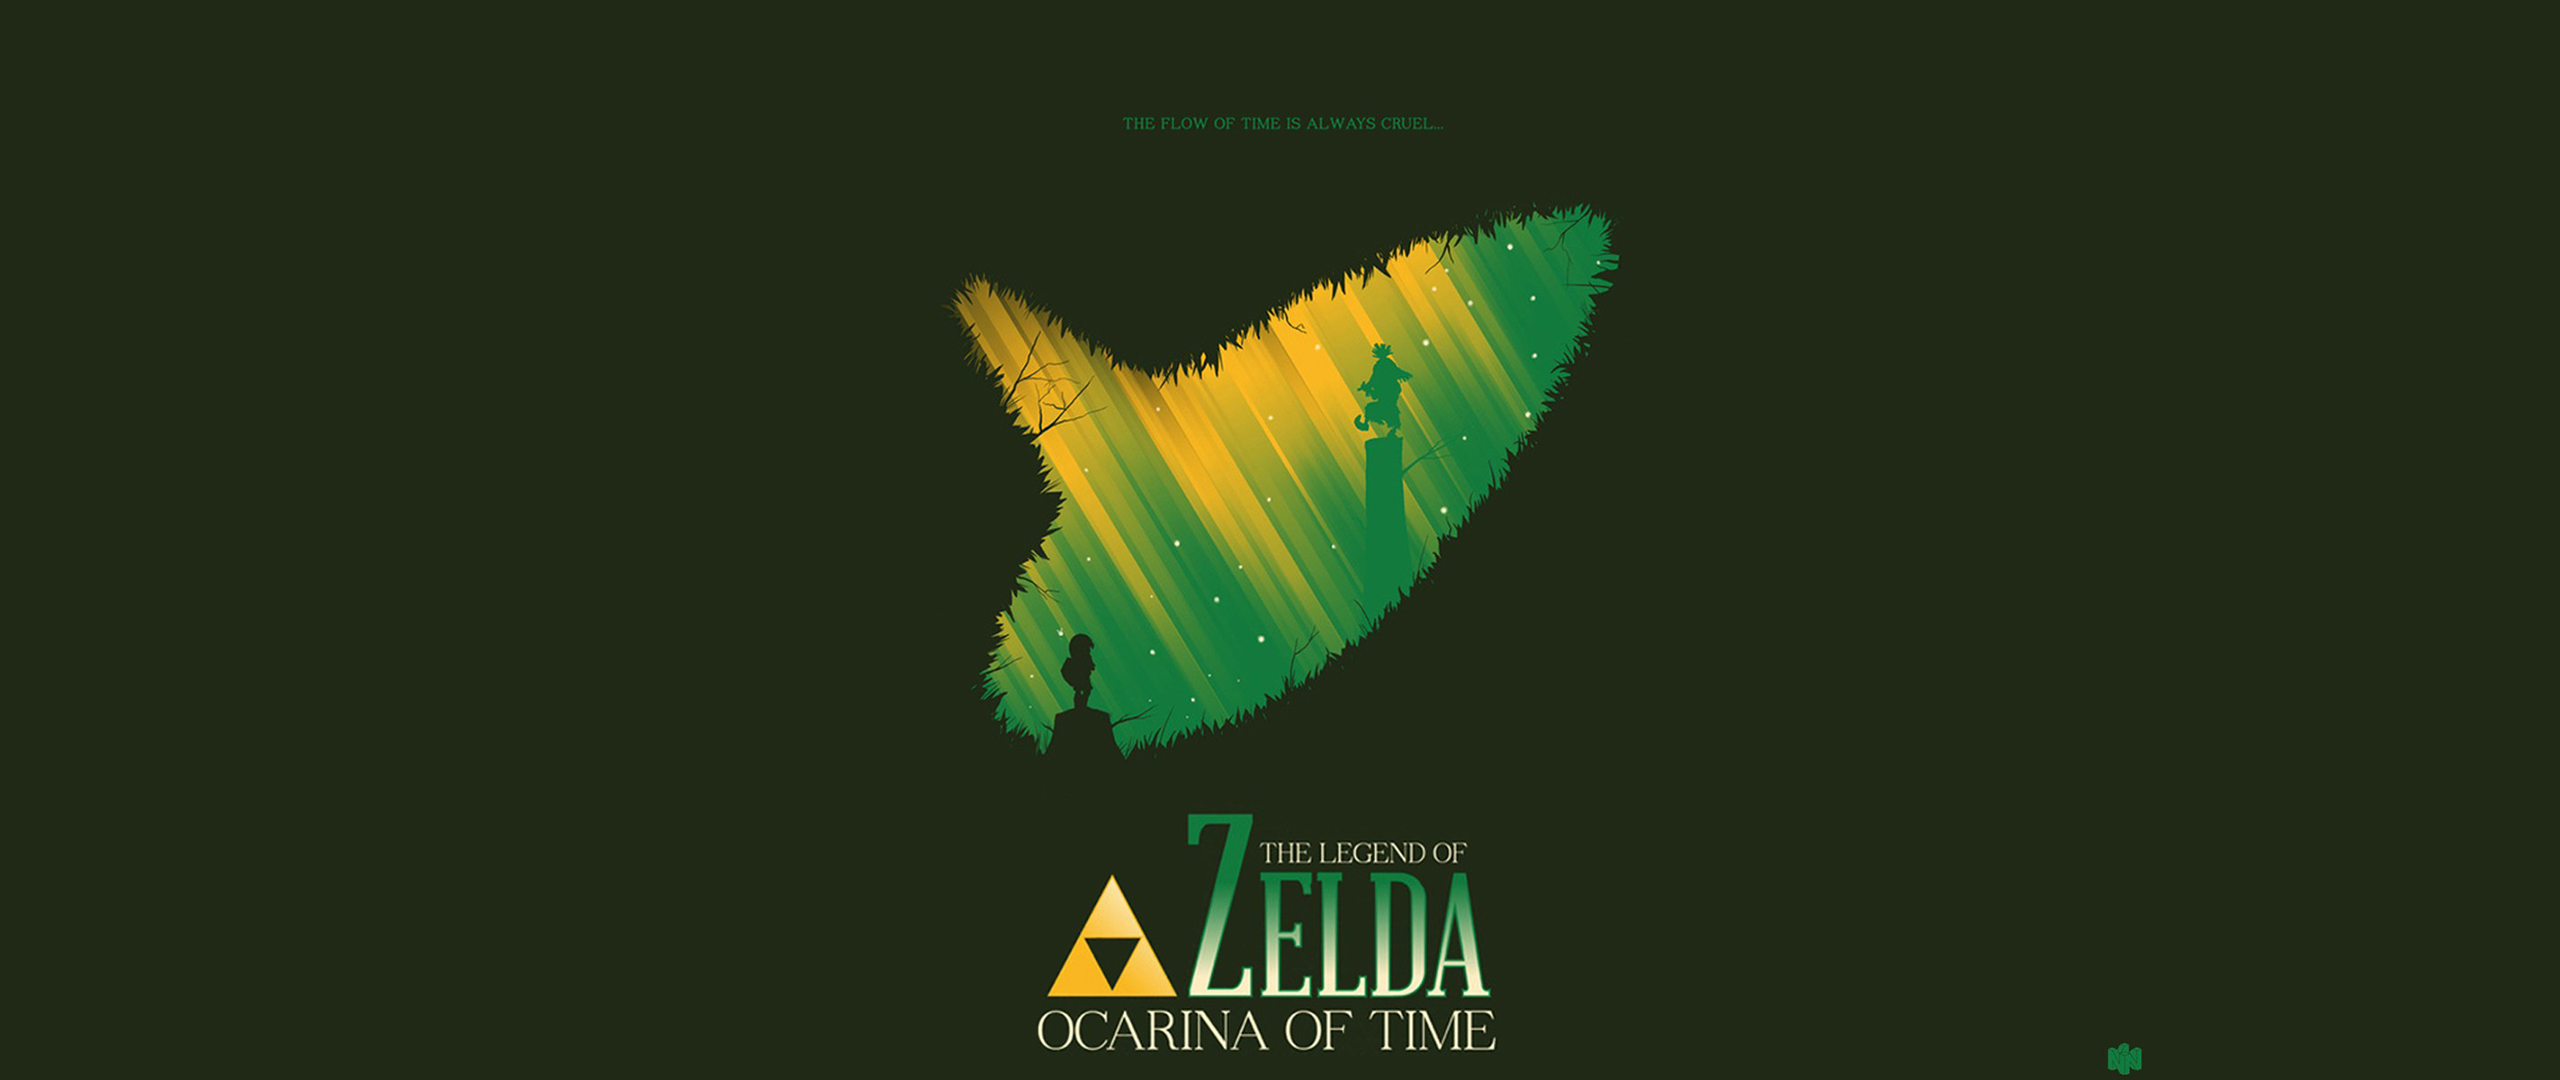 Nintendo Zelda Link Video Games Ocarina Of Time The Legend Of Zelda The Legend Of Zelda Ocarina Of T 2560x1080